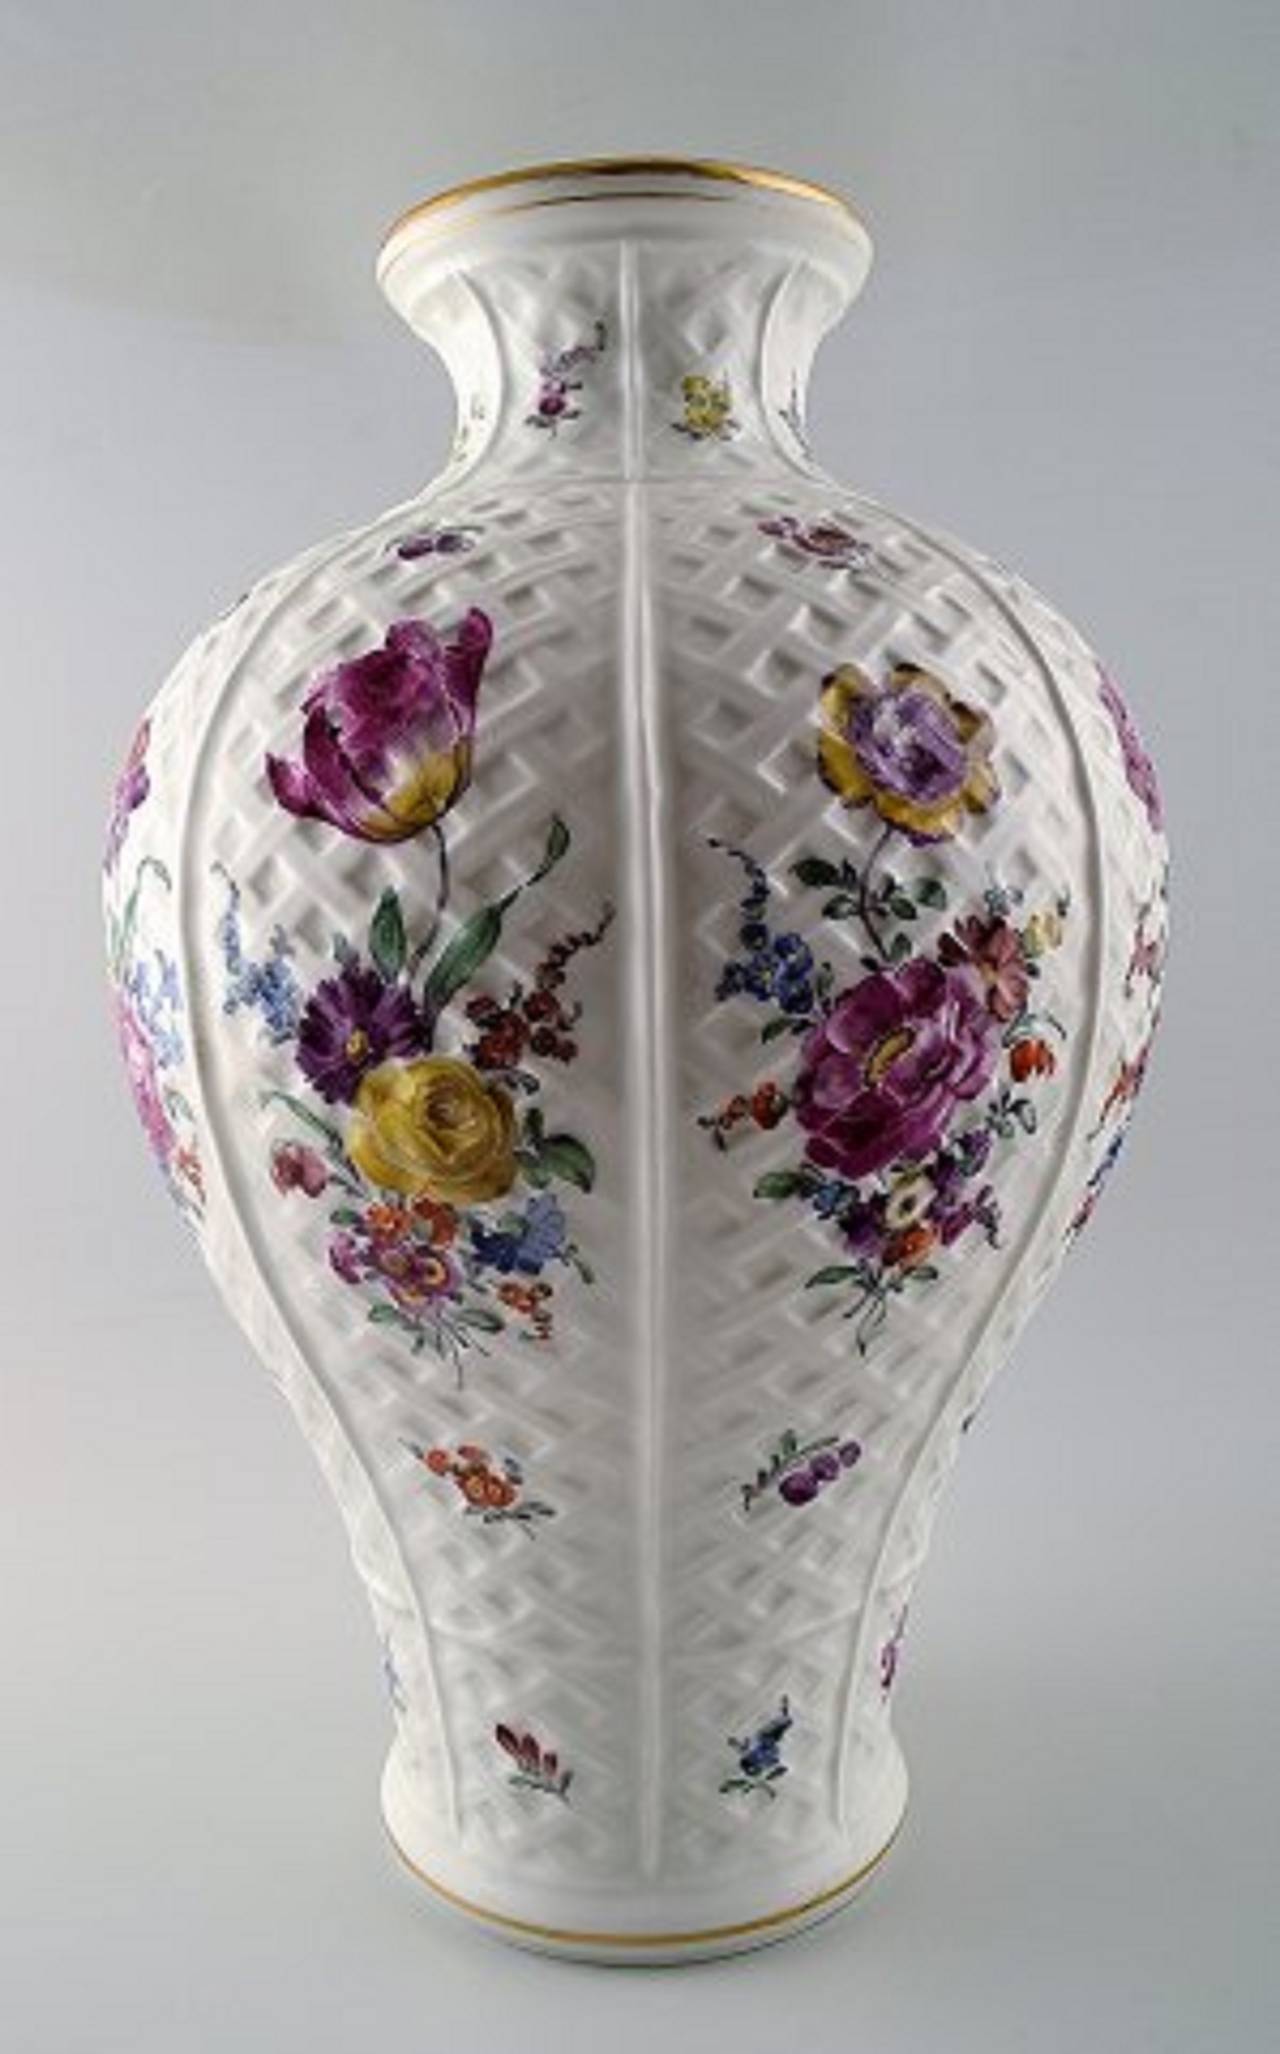 Grand vase viennois en porcelaine. Richement décorée de fleurs.
Peint à la main. Début du 20e siècle. Estampillé.
Mesures : 40 cm. En bon état.